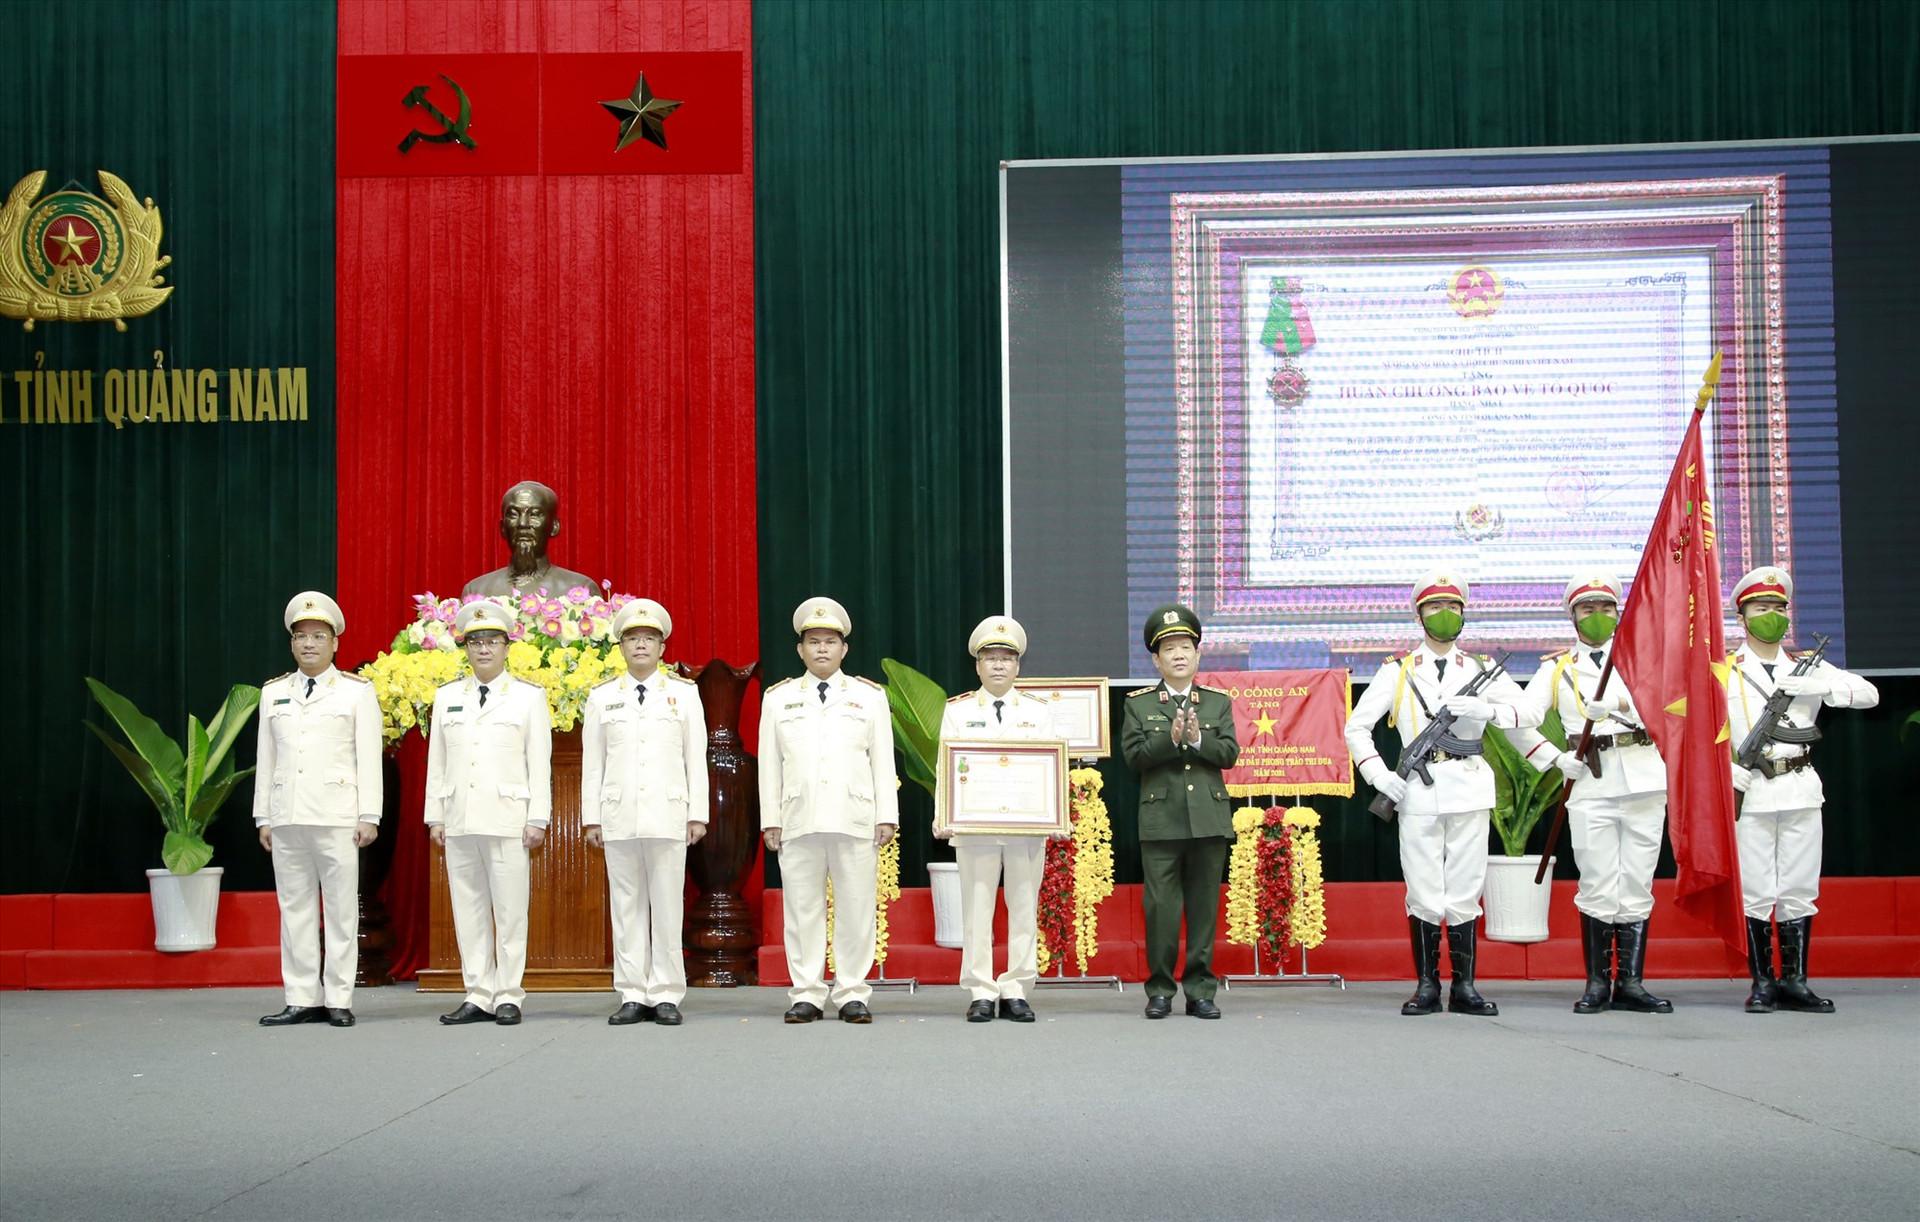 Thượng tướng Nguyễn Văn Sơn - Thứ trưởng Bộ Công an trao tặng Huân chương Bảo vệ Tổ quốc hạng Nhất cho Công an tỉnh vào tháng 1.2022. Ảnh: T.C